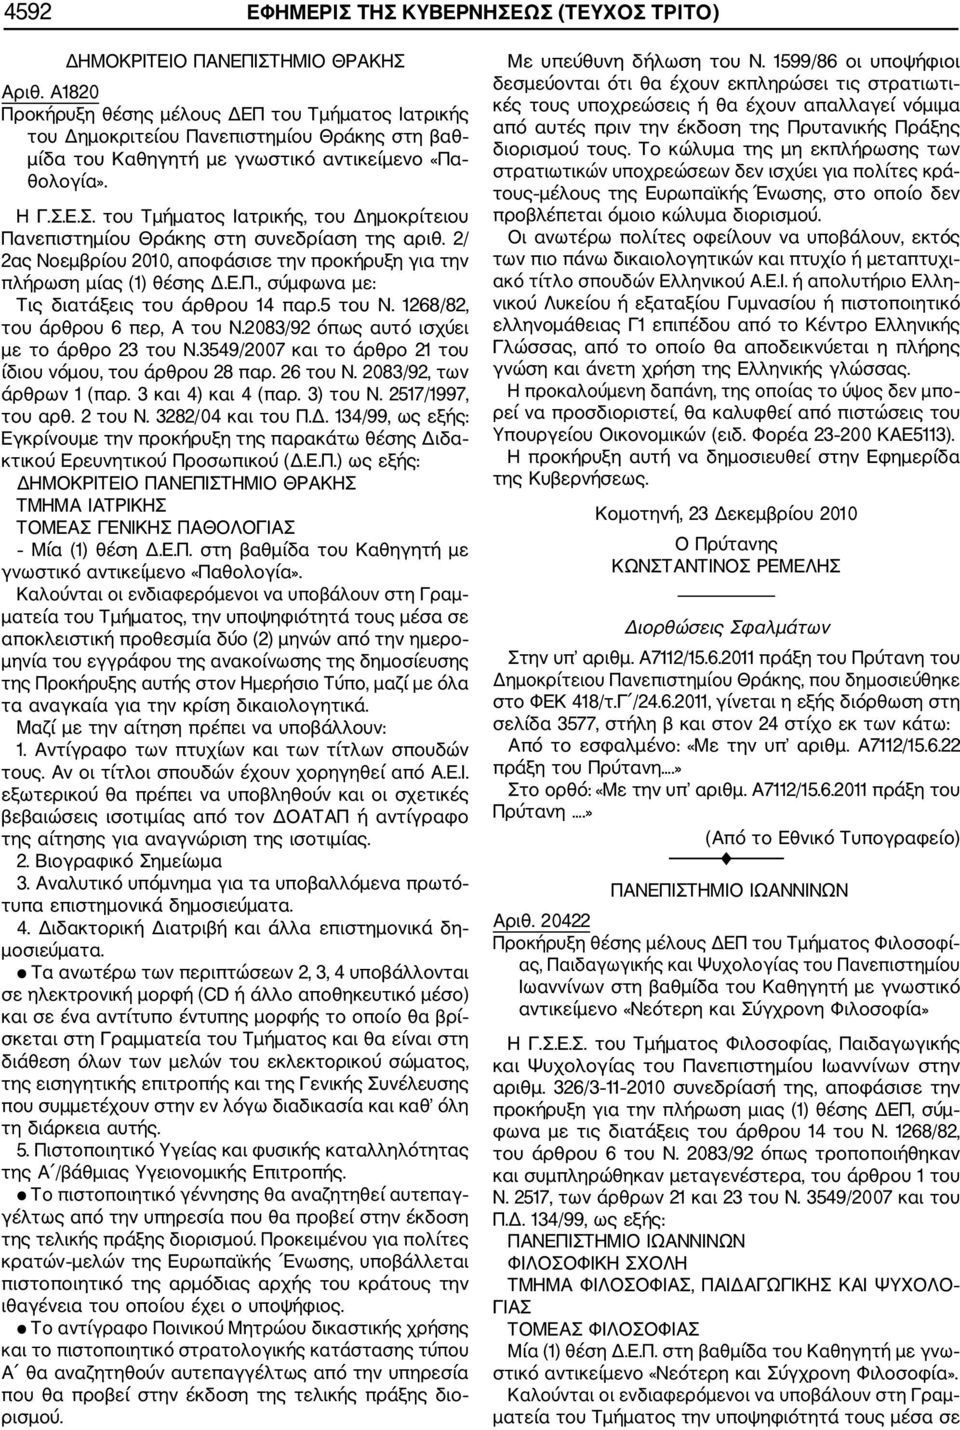 Ε.Σ. του Τμήματος Ιατρικής, του Δημοκρίτειου Πανεπιστημίου Θράκης στη συνεδρίαση της αριθ. 2/ 2ας Νοεμβρίου 2010, αποφάσισε την προκήρυξη για την πλήρωση μίας (1) θέσης Δ.Ε.Π., σύμφωνα με: Τις διατάξεις του άρθρου 14 παρ.